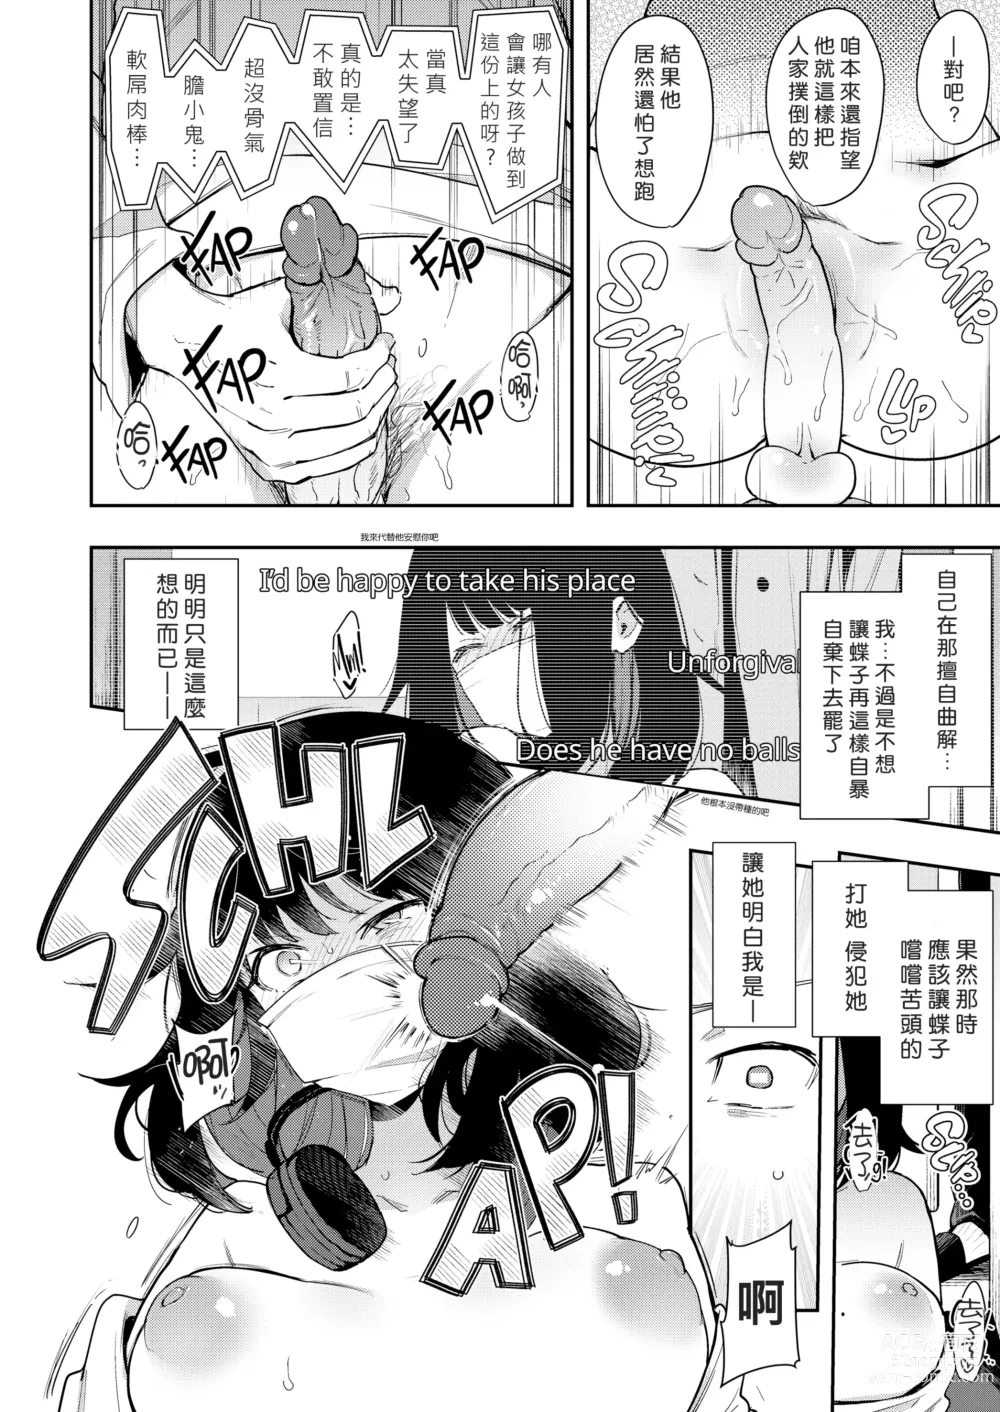 Page 18 of doujinshi 蝶子 I -性倫理の壊れた幼馴染が見知らぬ男に抱かれる生配信を視て射精する-